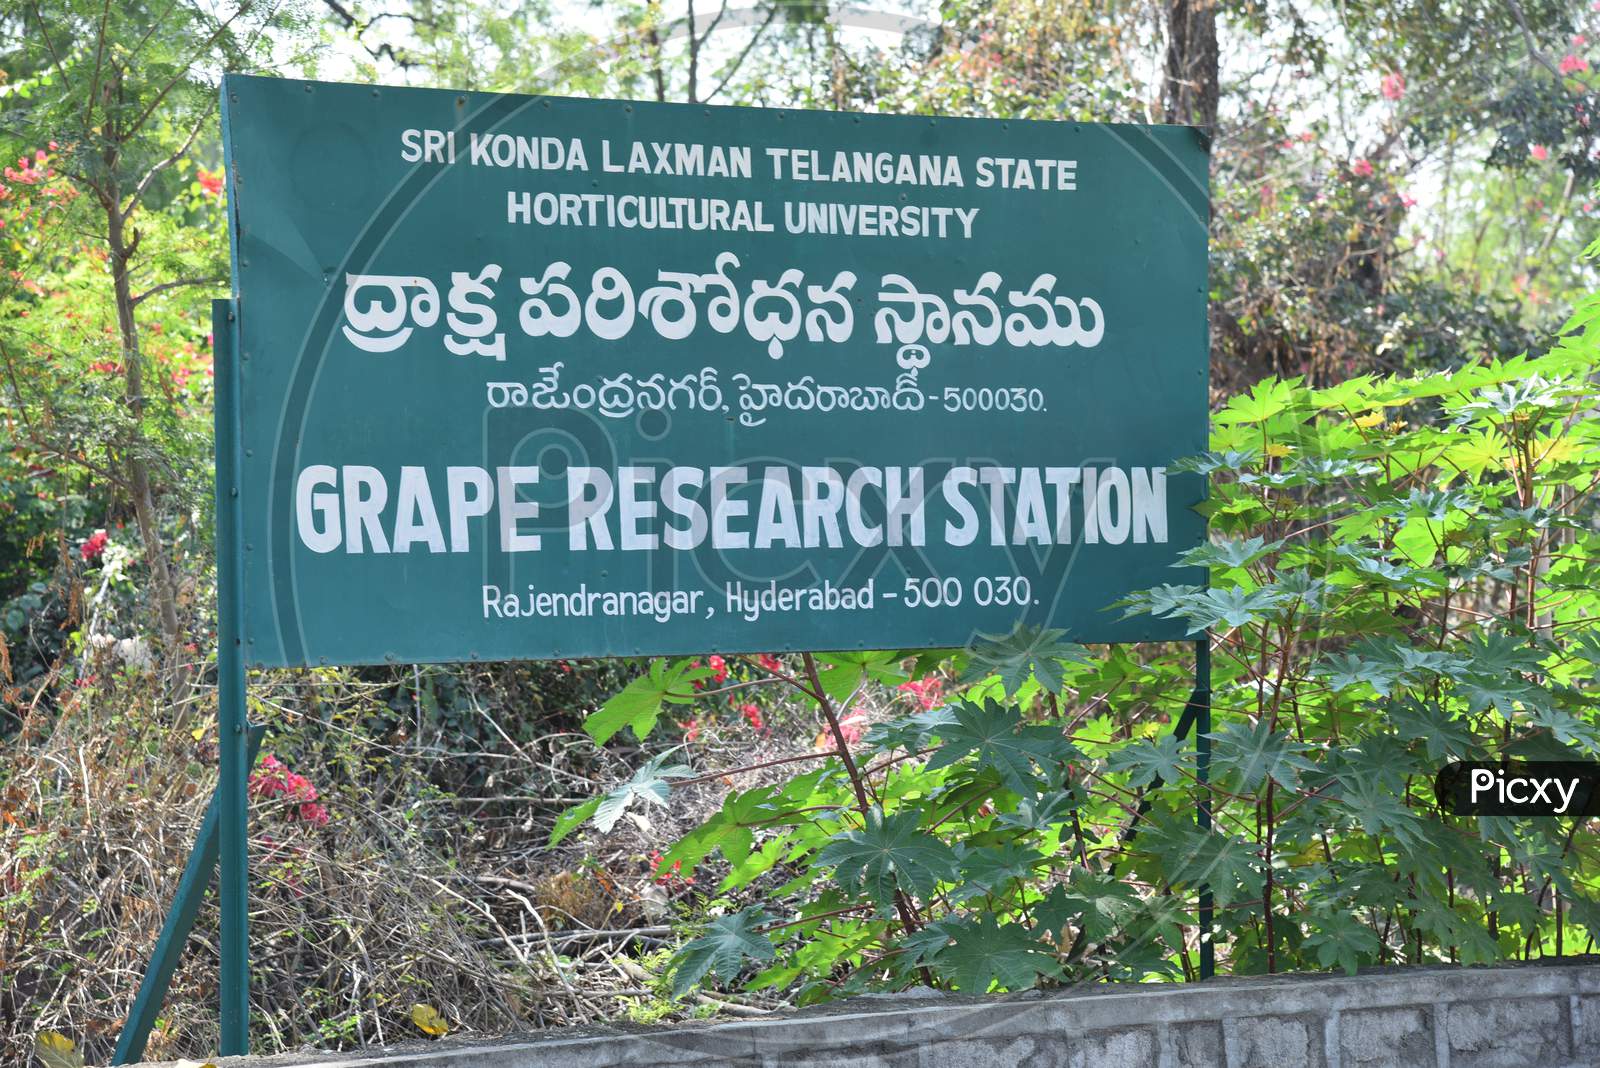 Sri KondaLaxman Telanagana State University Grape Research Station